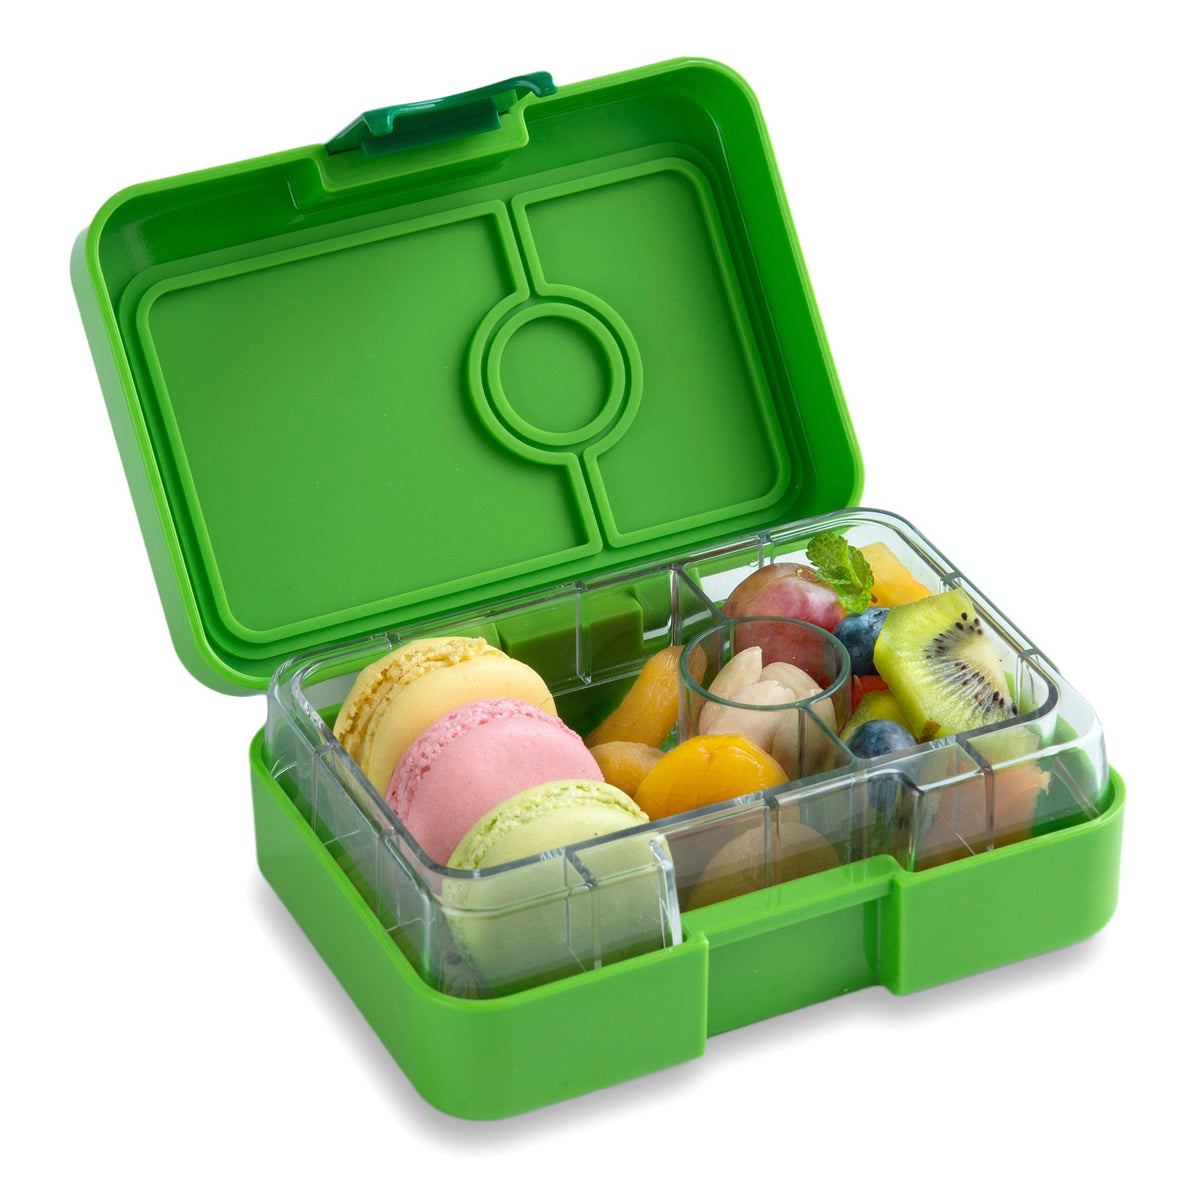 yumbox-mini-snack-avocado-green-3-compartment-lunch-box- (3)